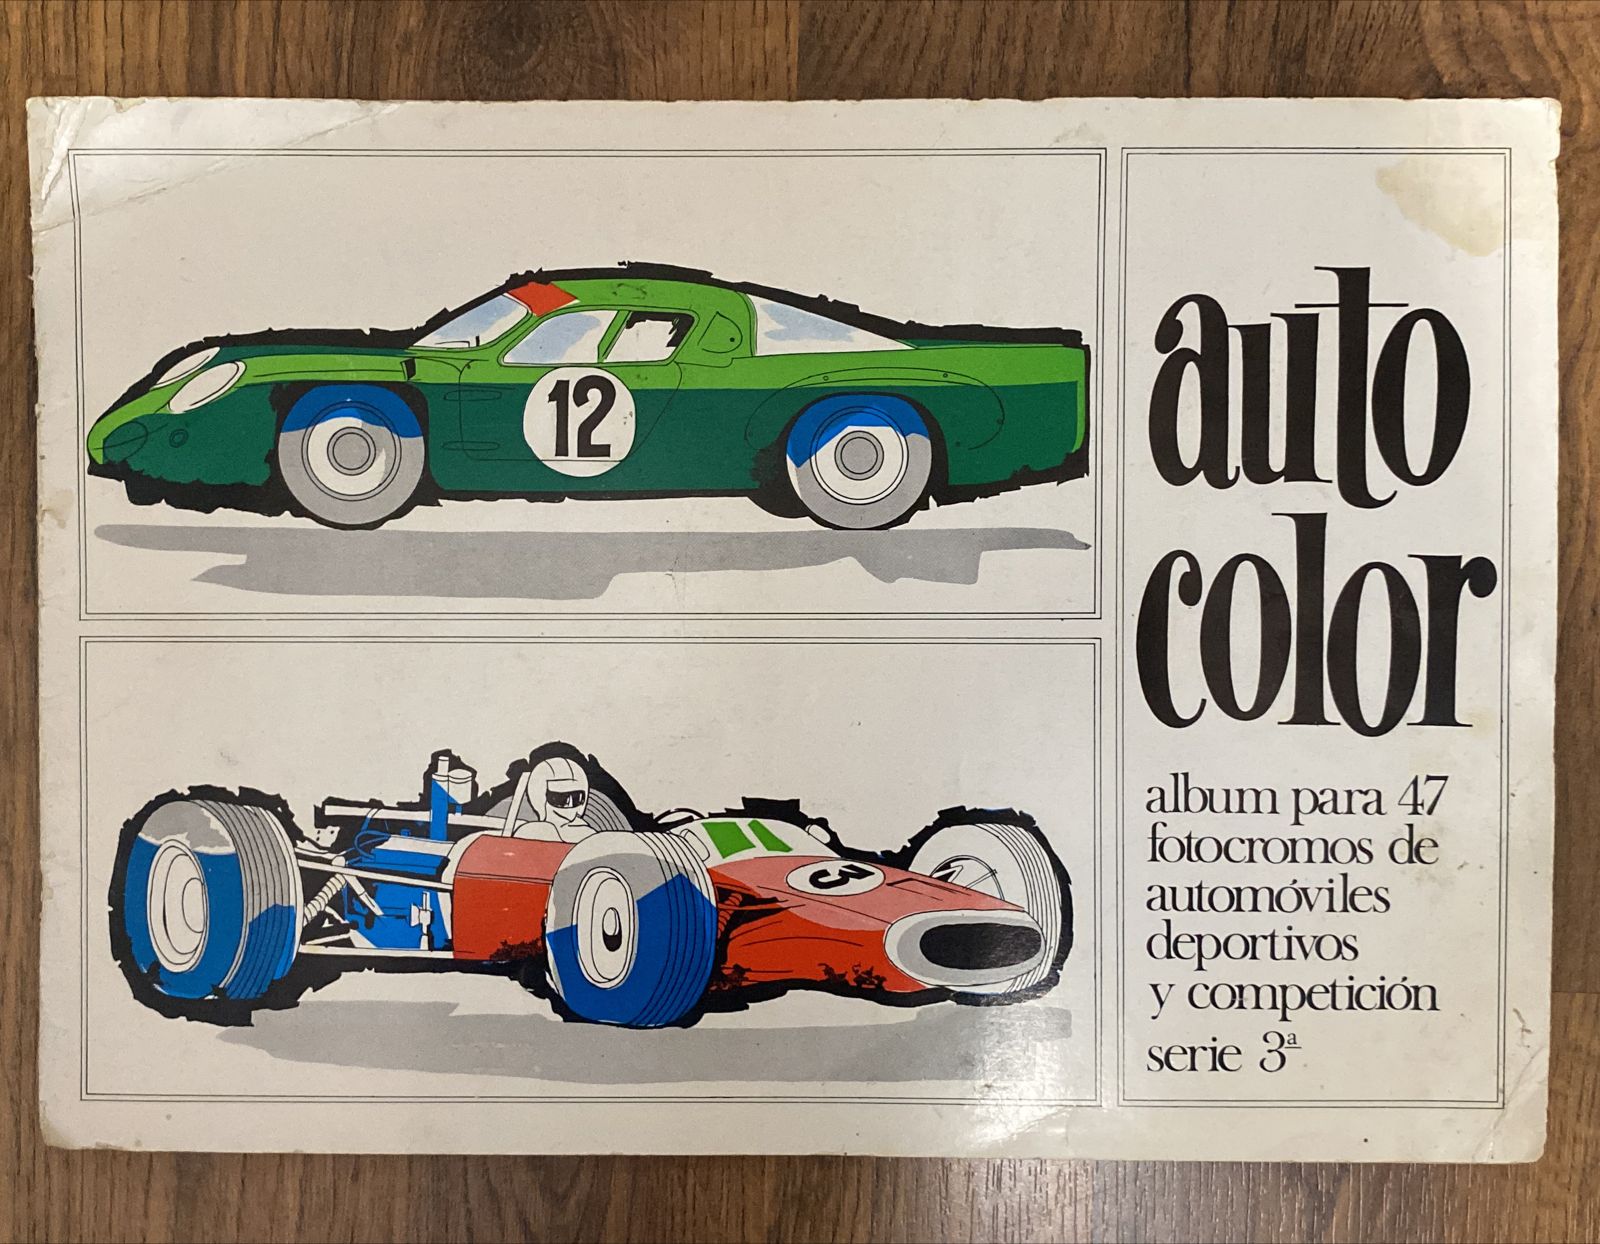 Auto Color. Álbum de Automóviles Deportivos. Serie 3ª. Faltan 22 cromos de 47